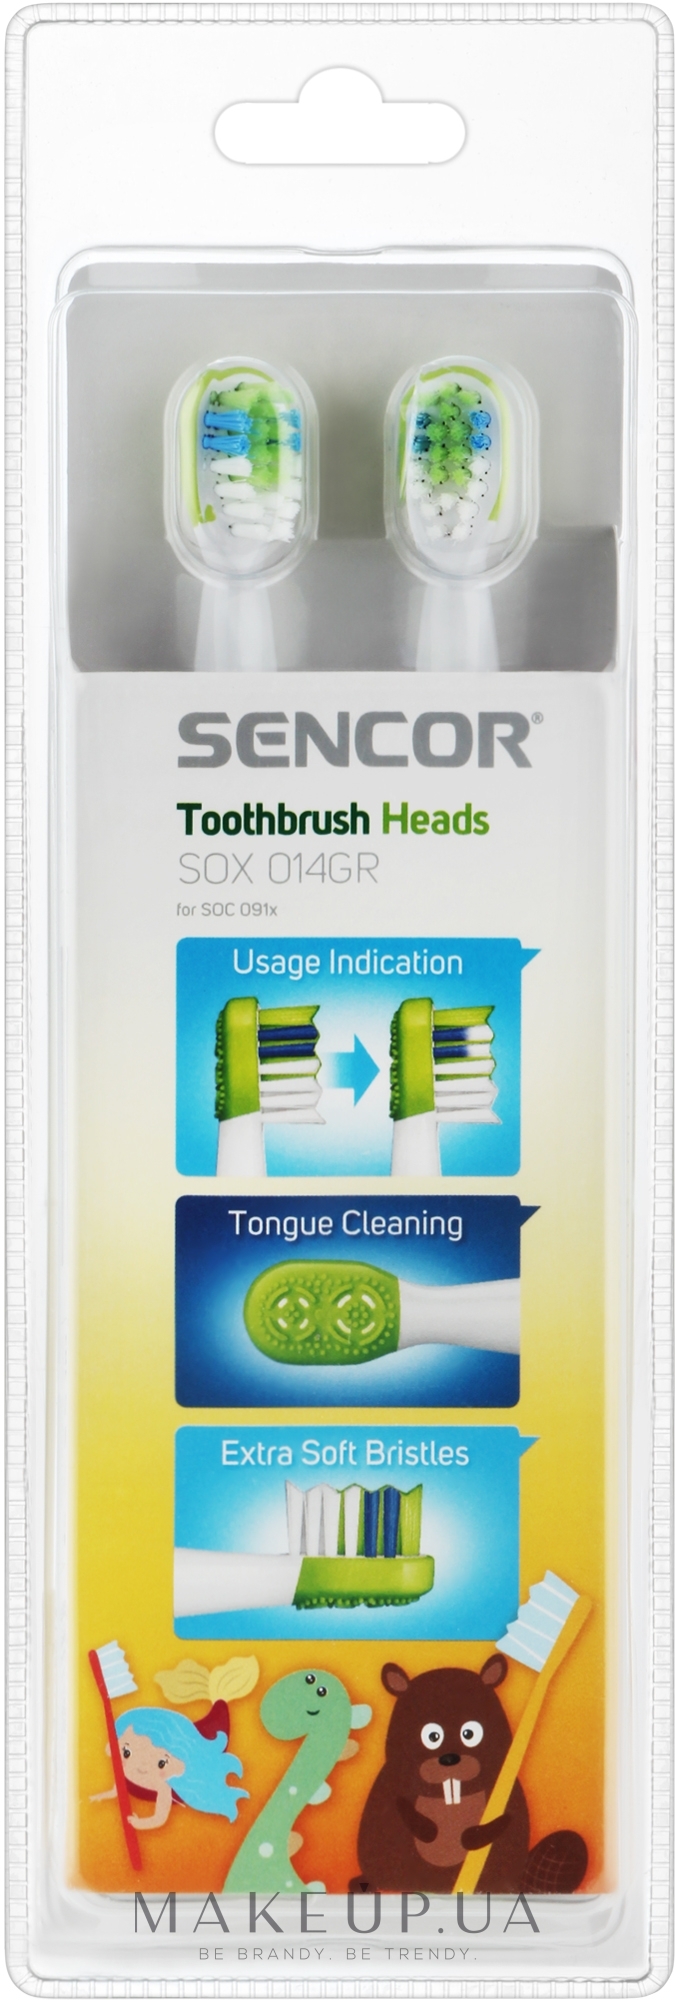 Насадка для електричної зубної щітки, 4 шт. - Sencor Toothbrush Heads SOX 014GR — фото 4шт